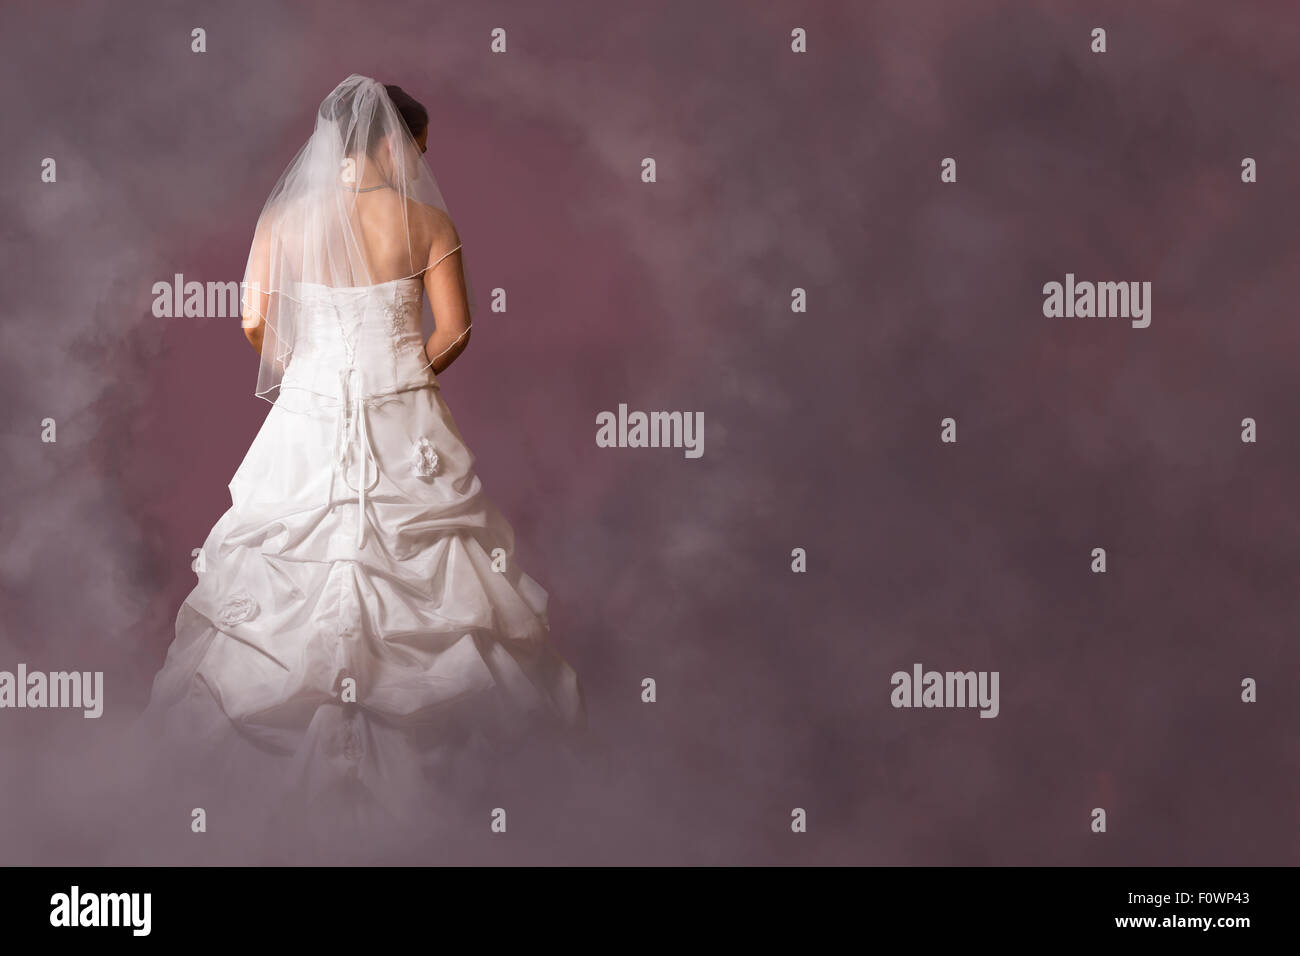 Jeune femme en robe de mariée dans un environnement nuageux rose Banque D'Images